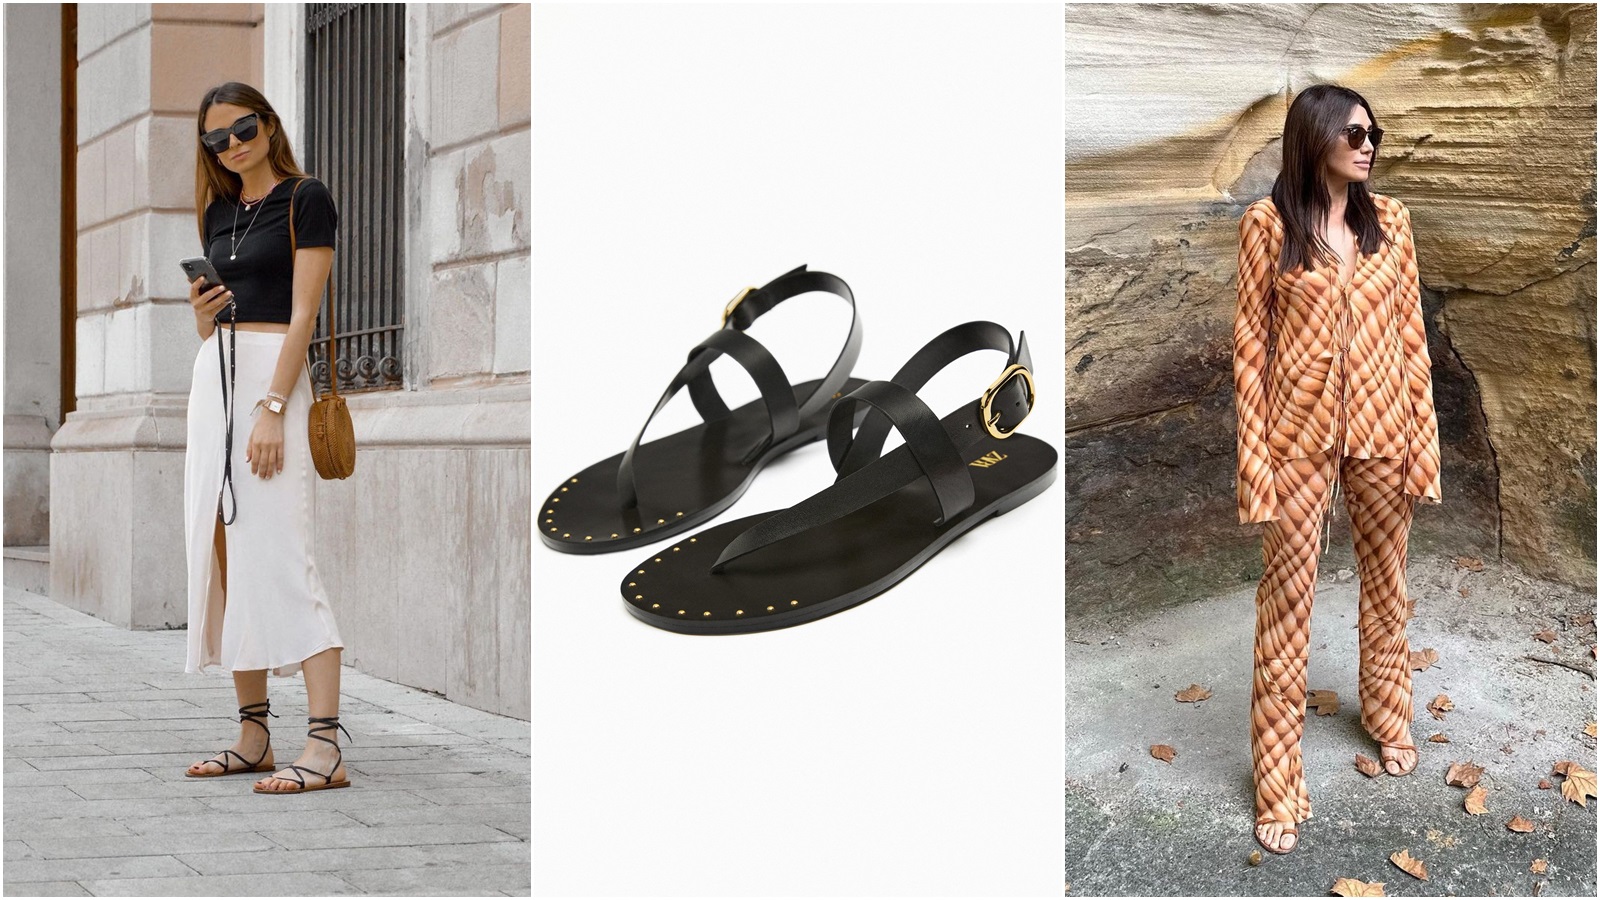 Capri sandale u novim modelima za ljeto su nam na wishlisti